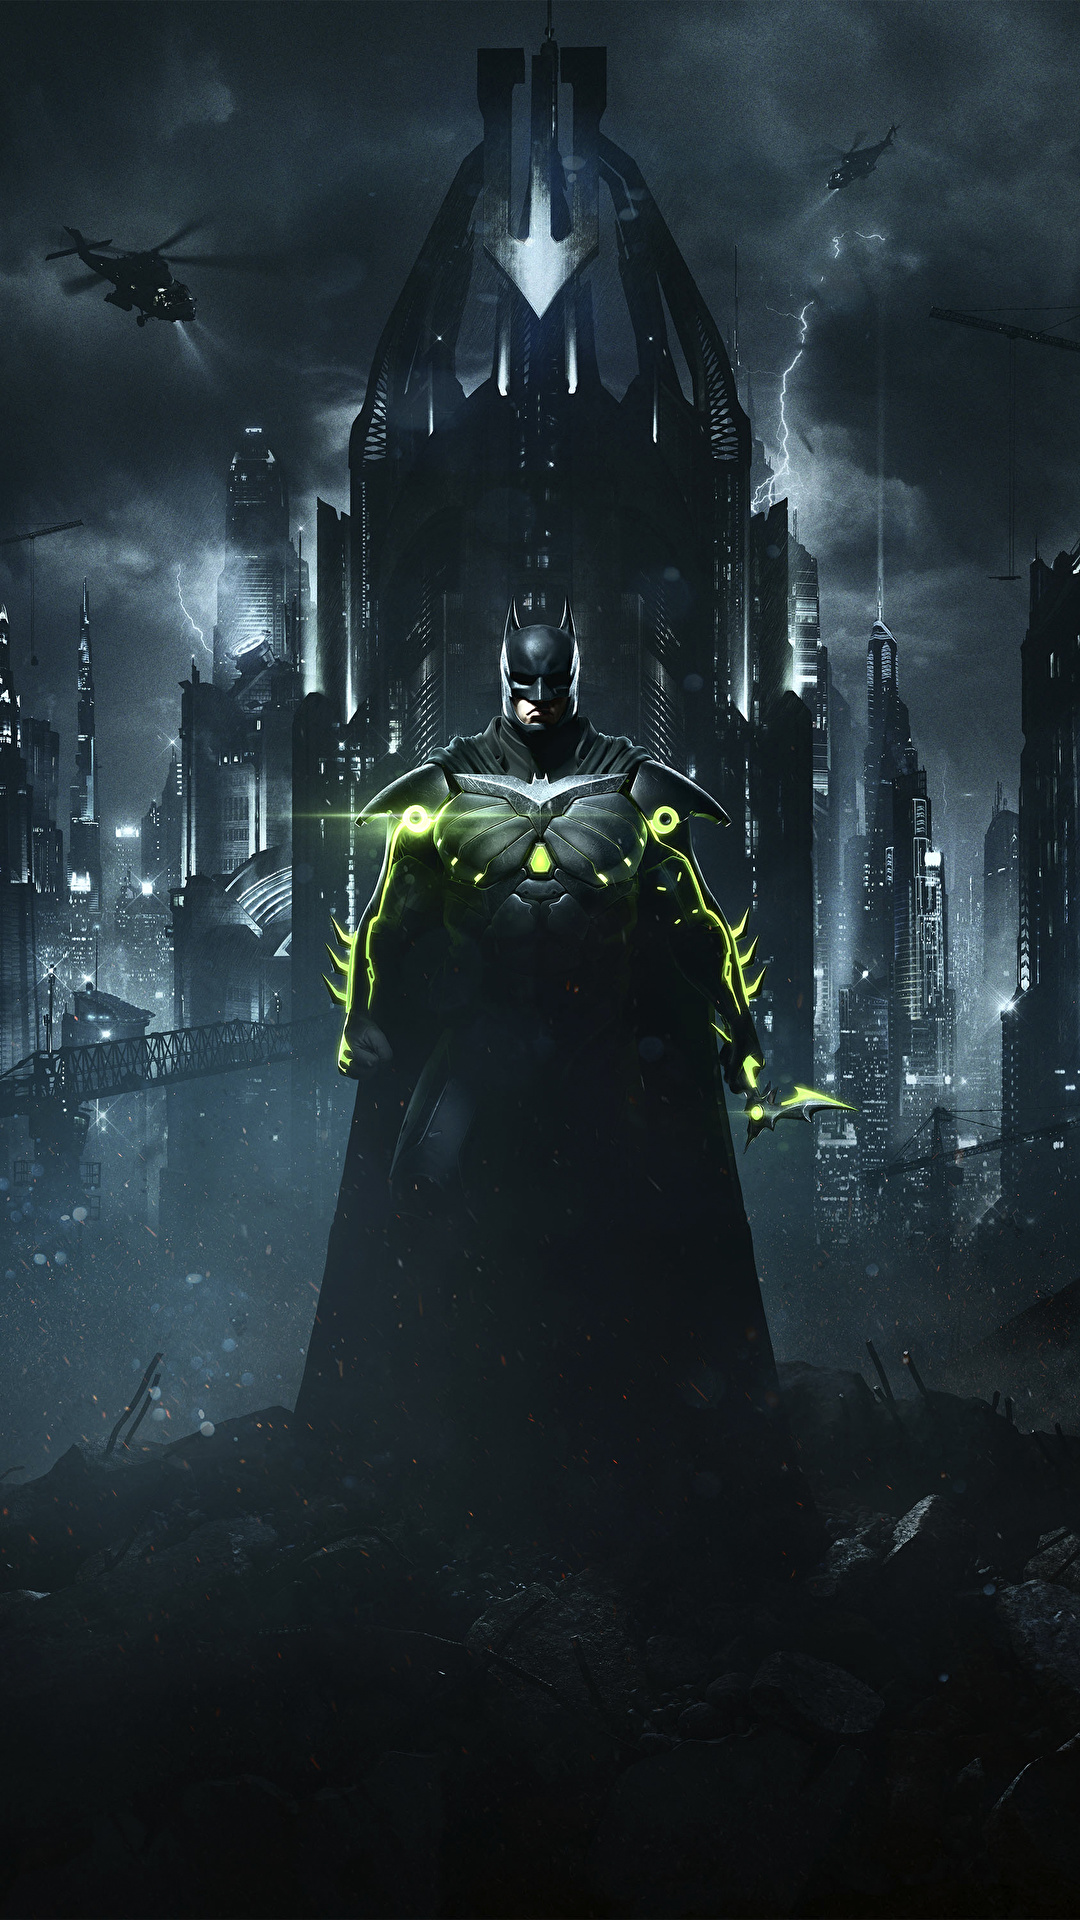 Image Injustice 2 Heroes comics Batman hero vdeo game 1080x1920